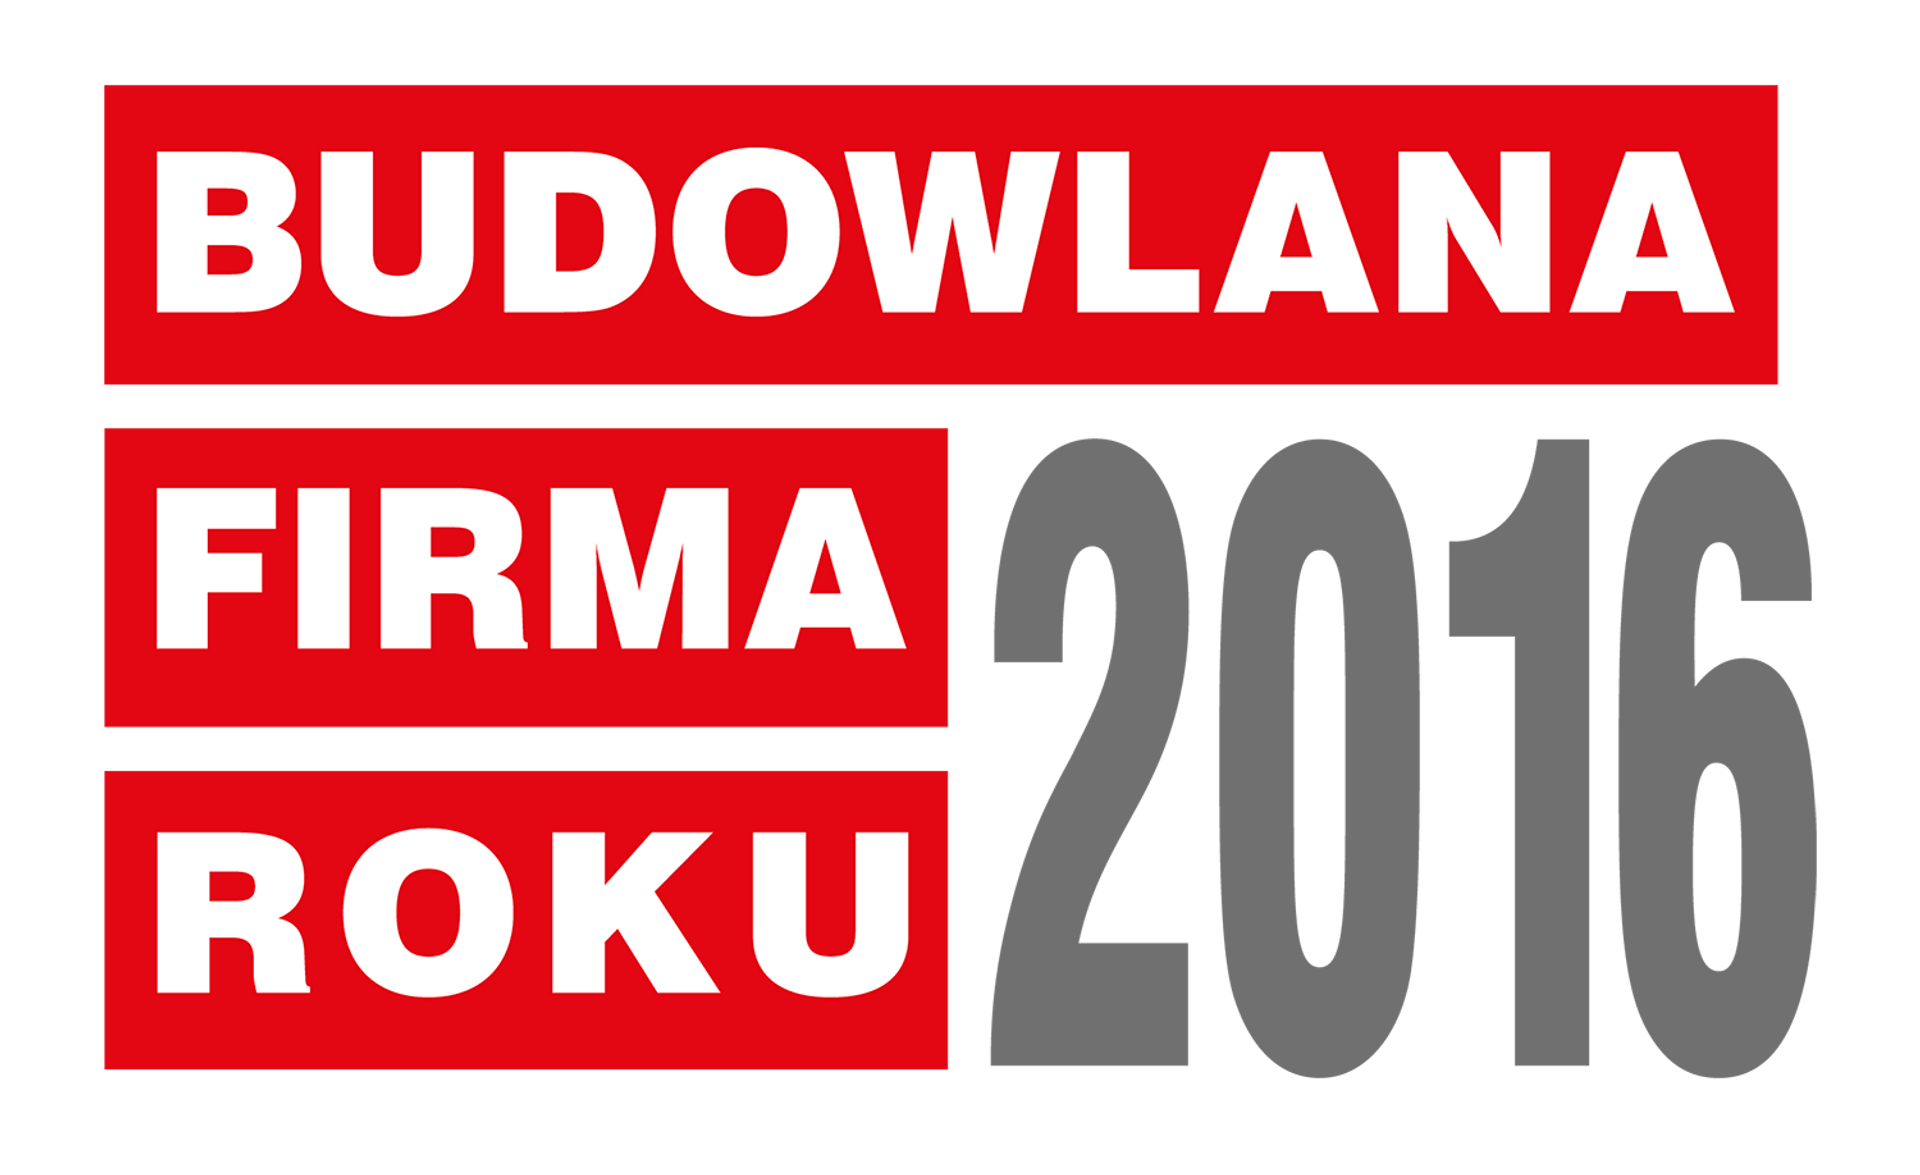  ROCKWOOL Polska z tytułem Budowlanej Firmy Roku